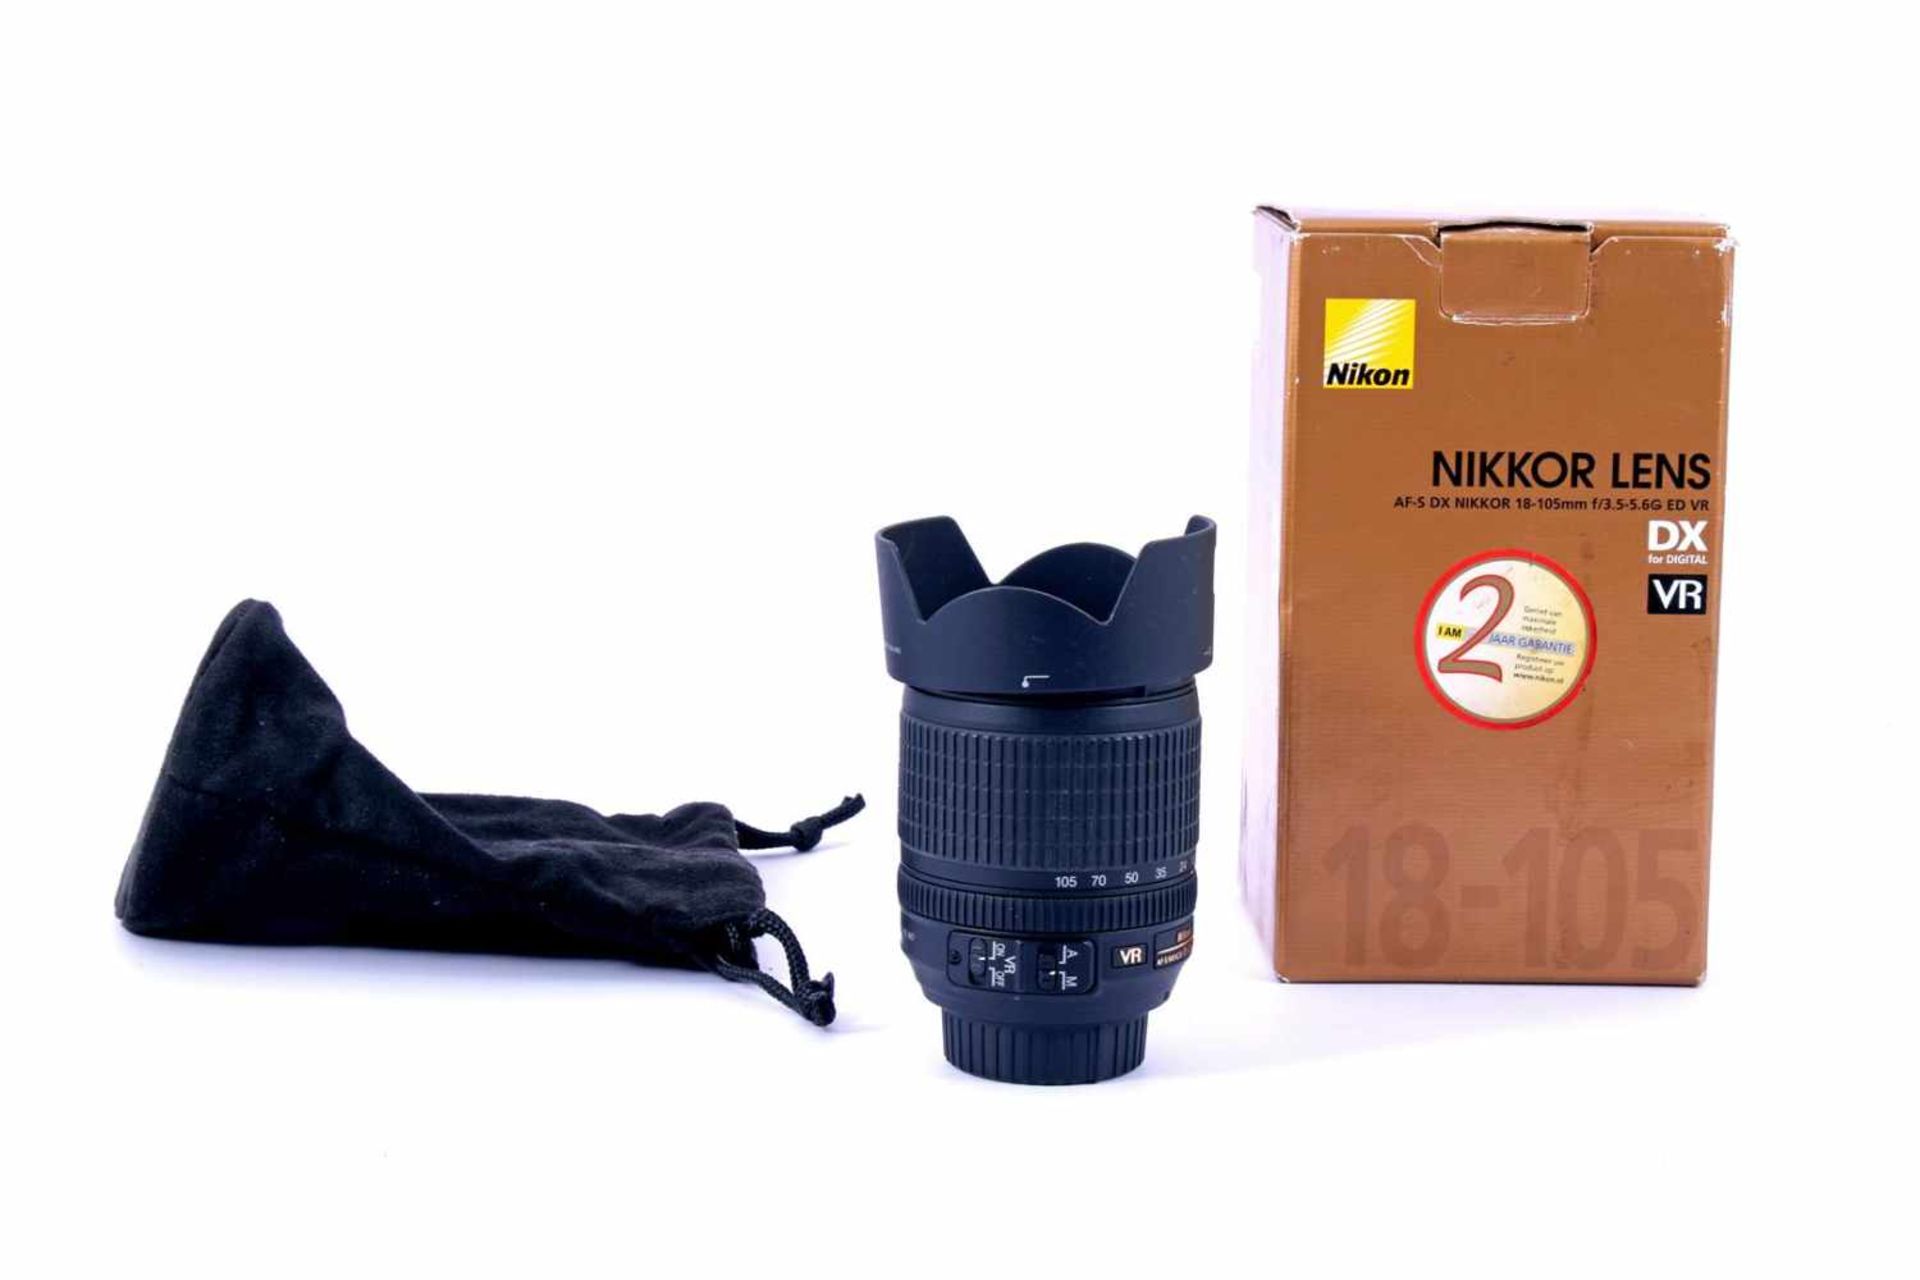 Nikon Nikkor lens, AF-S DX 18-105 mm, f/3.5-5.6G ED VR